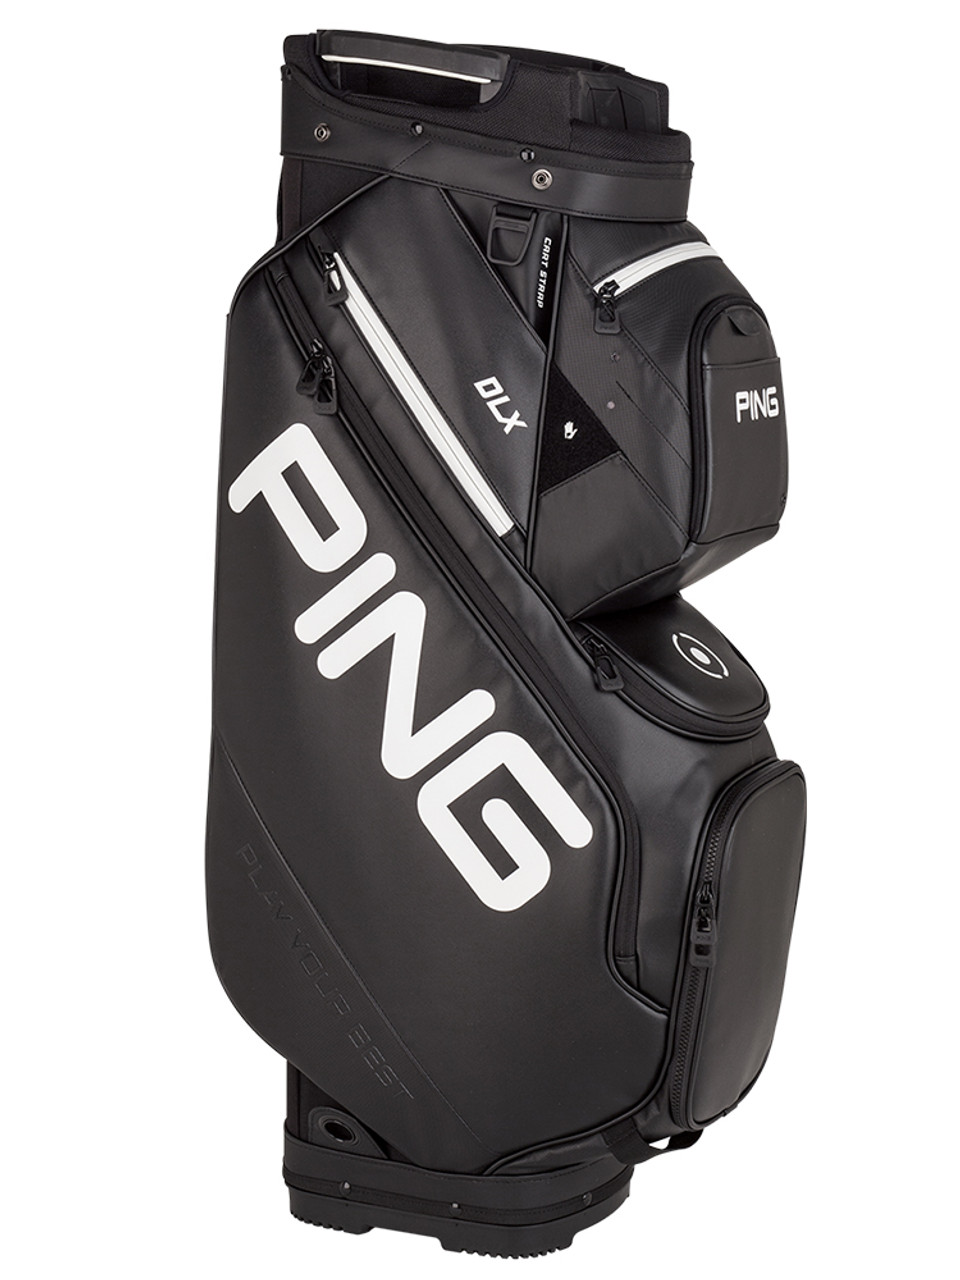 Ping DLX 191 Golf Cart Bag - Black | GolfBox